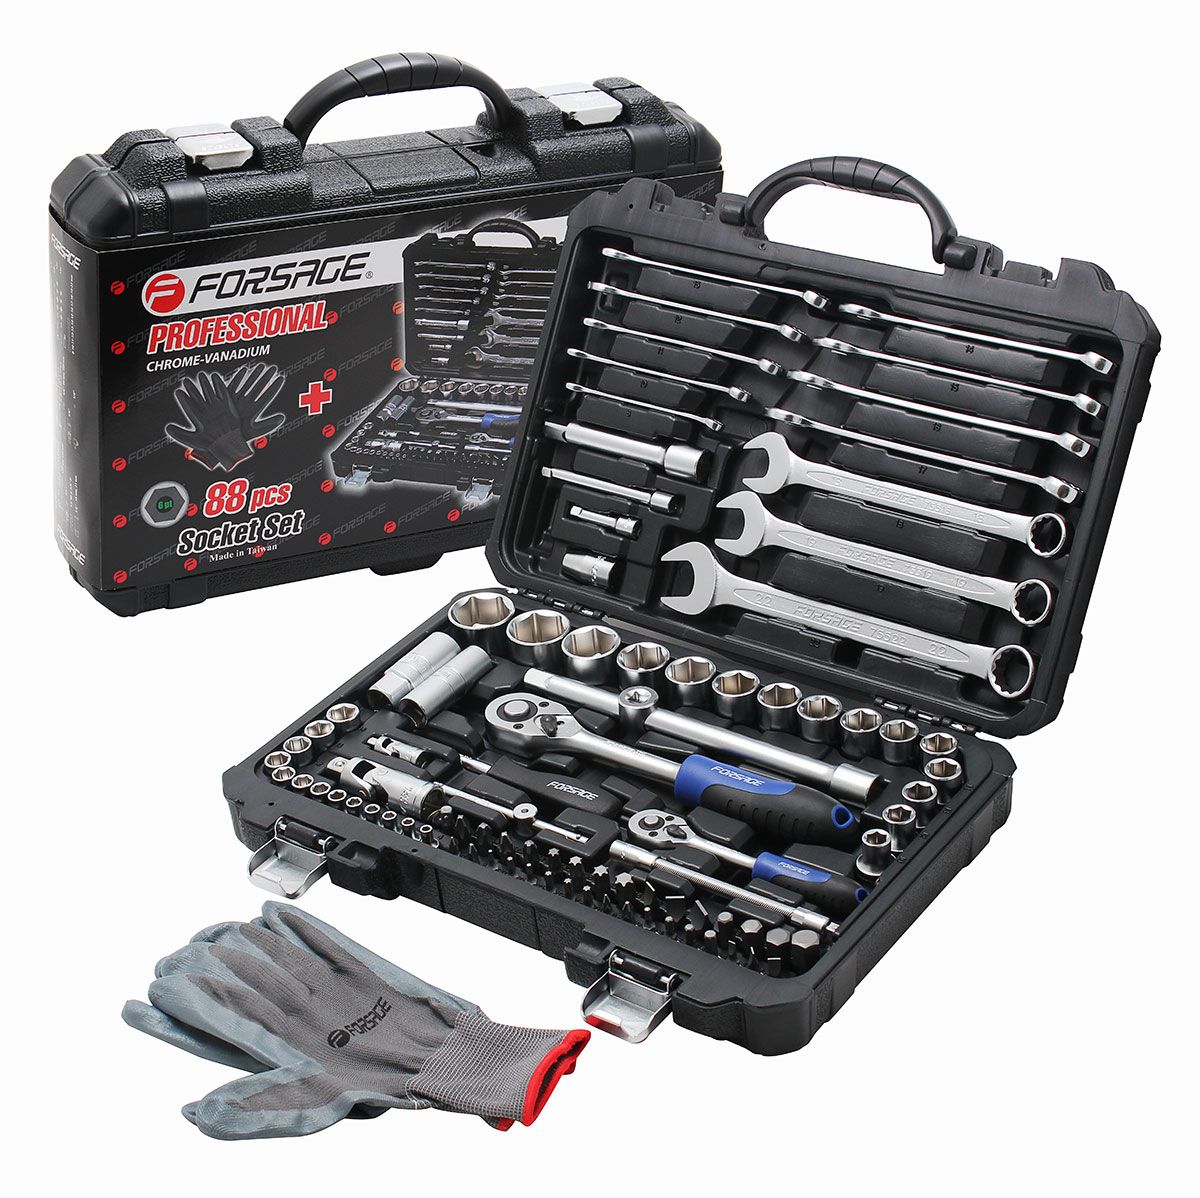 F tools. Набор автомобильных инструментов Forsage 4881-7. Forsage f-41802-5. 42182-5 (Forsage) 1/4" & 3/8" & 1/2" набор инструмента 218 предметов. Набор инструментов Forsage 4772-9.